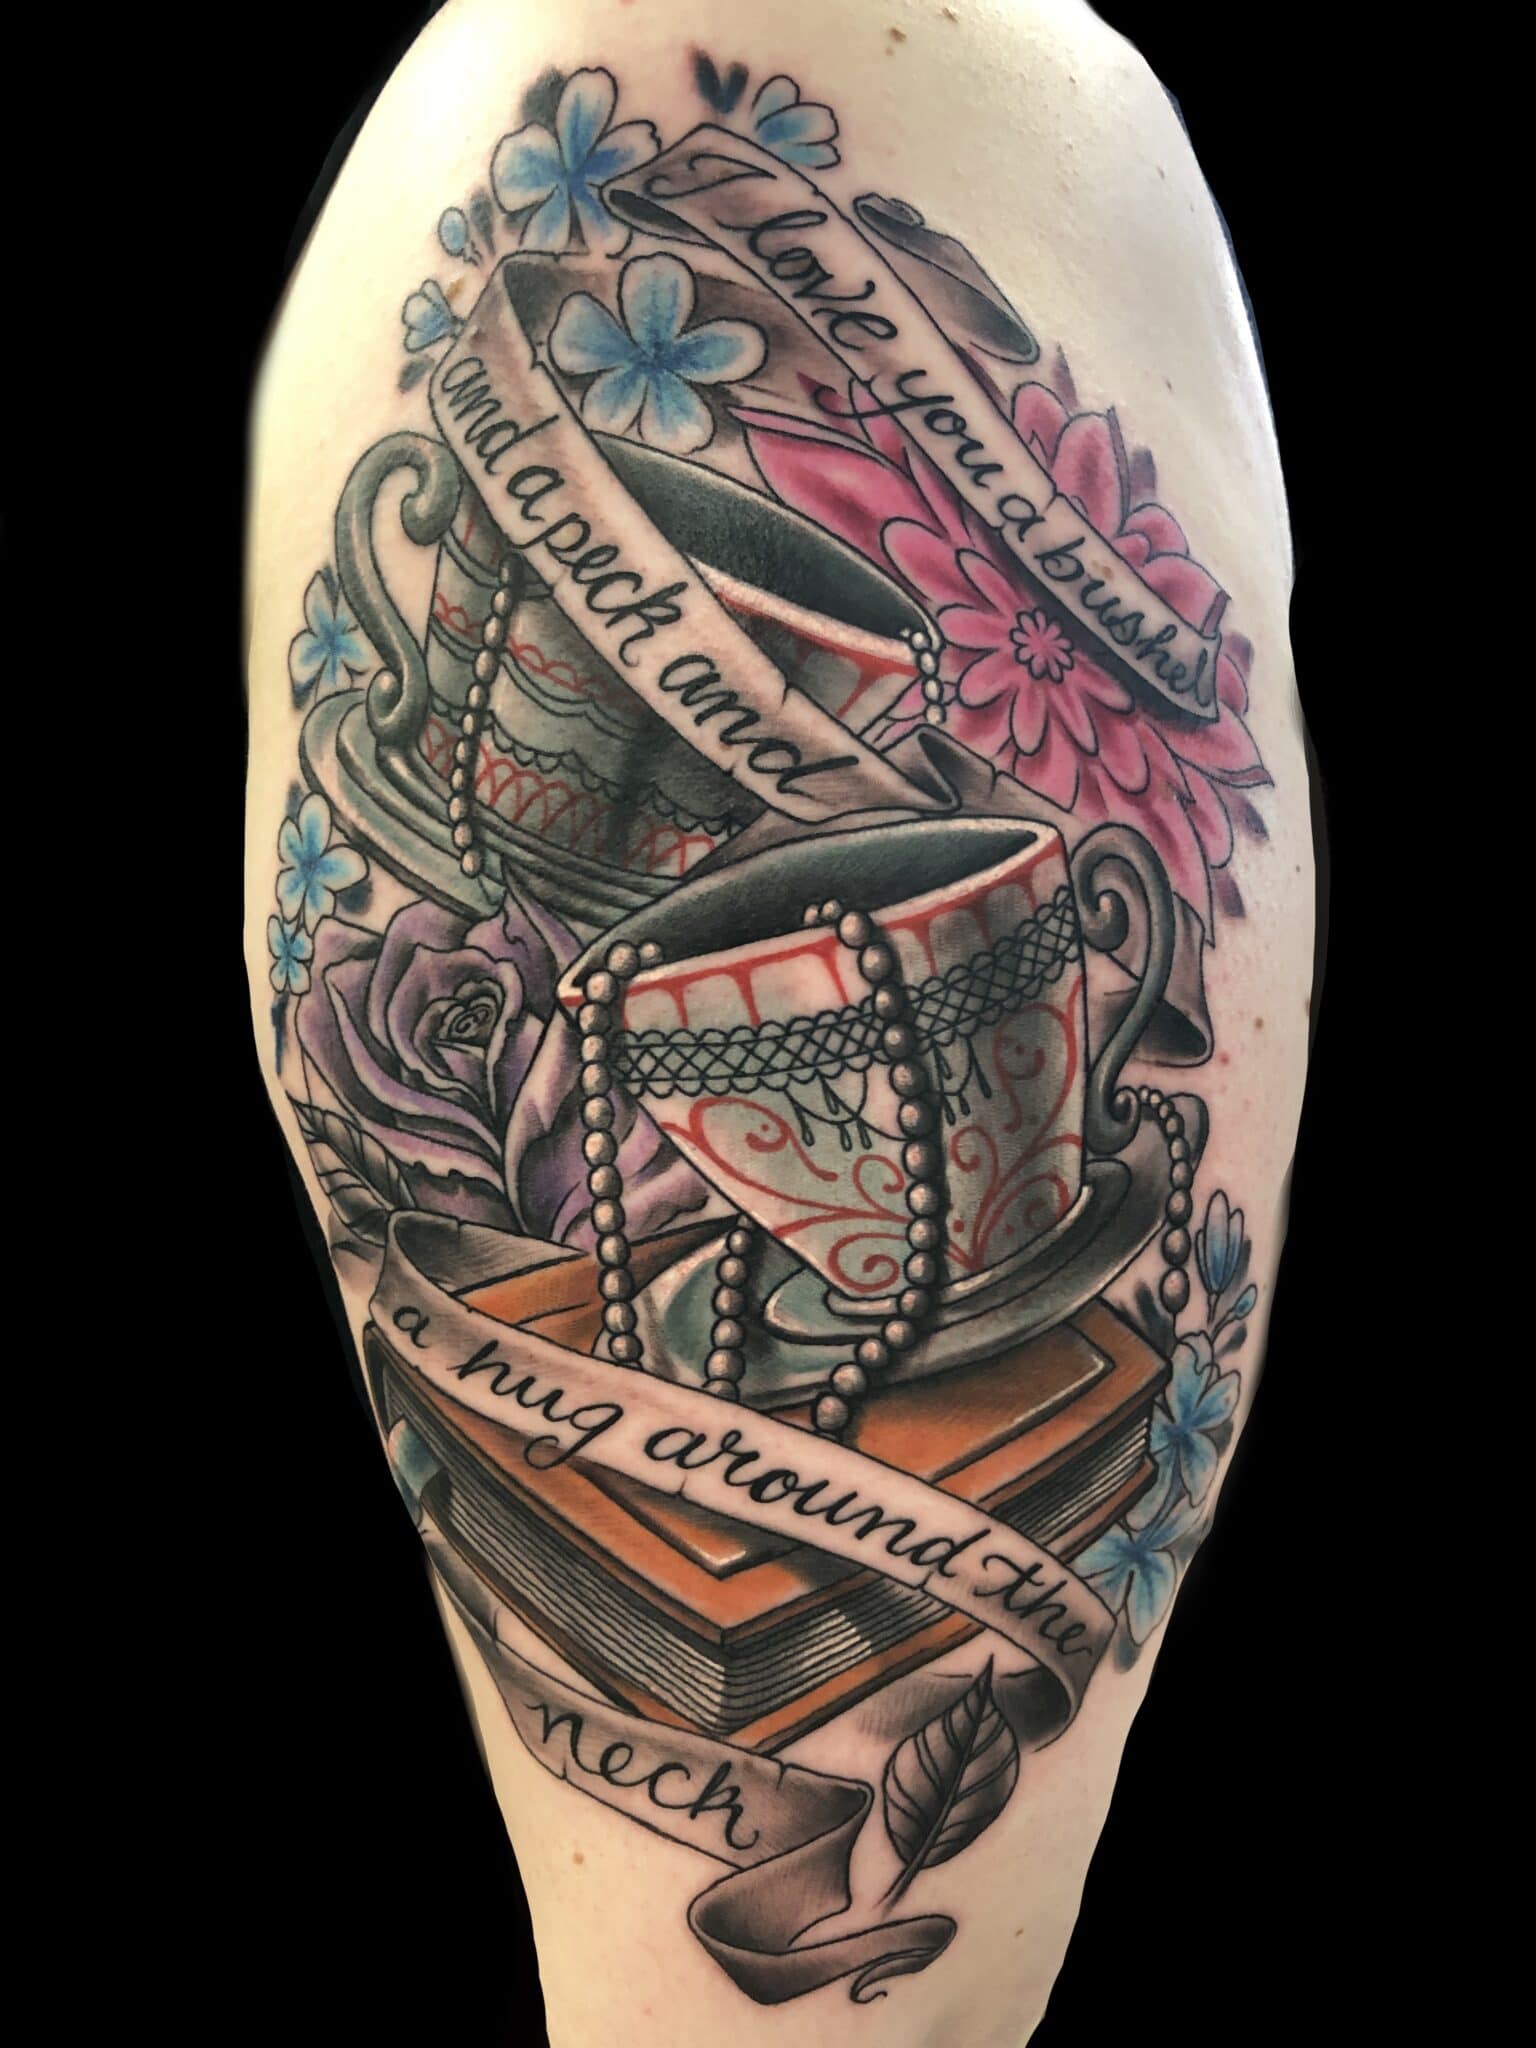 Tattoo by Brad Huntington, tattoo artist at Revolt Tattoos